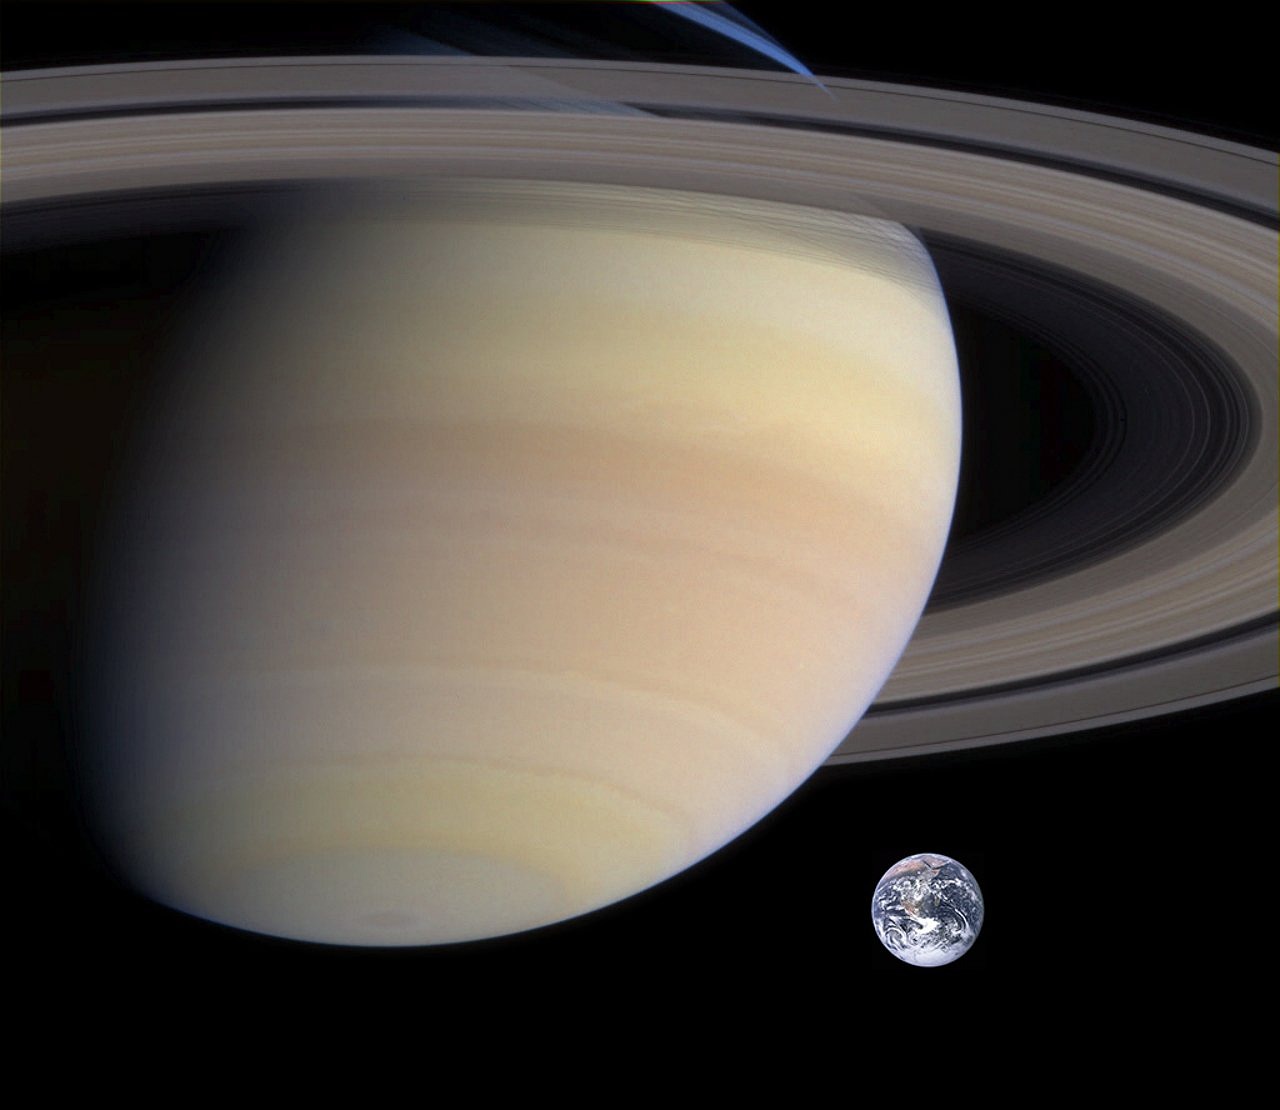 Descubriendo la Traslación de Saturno